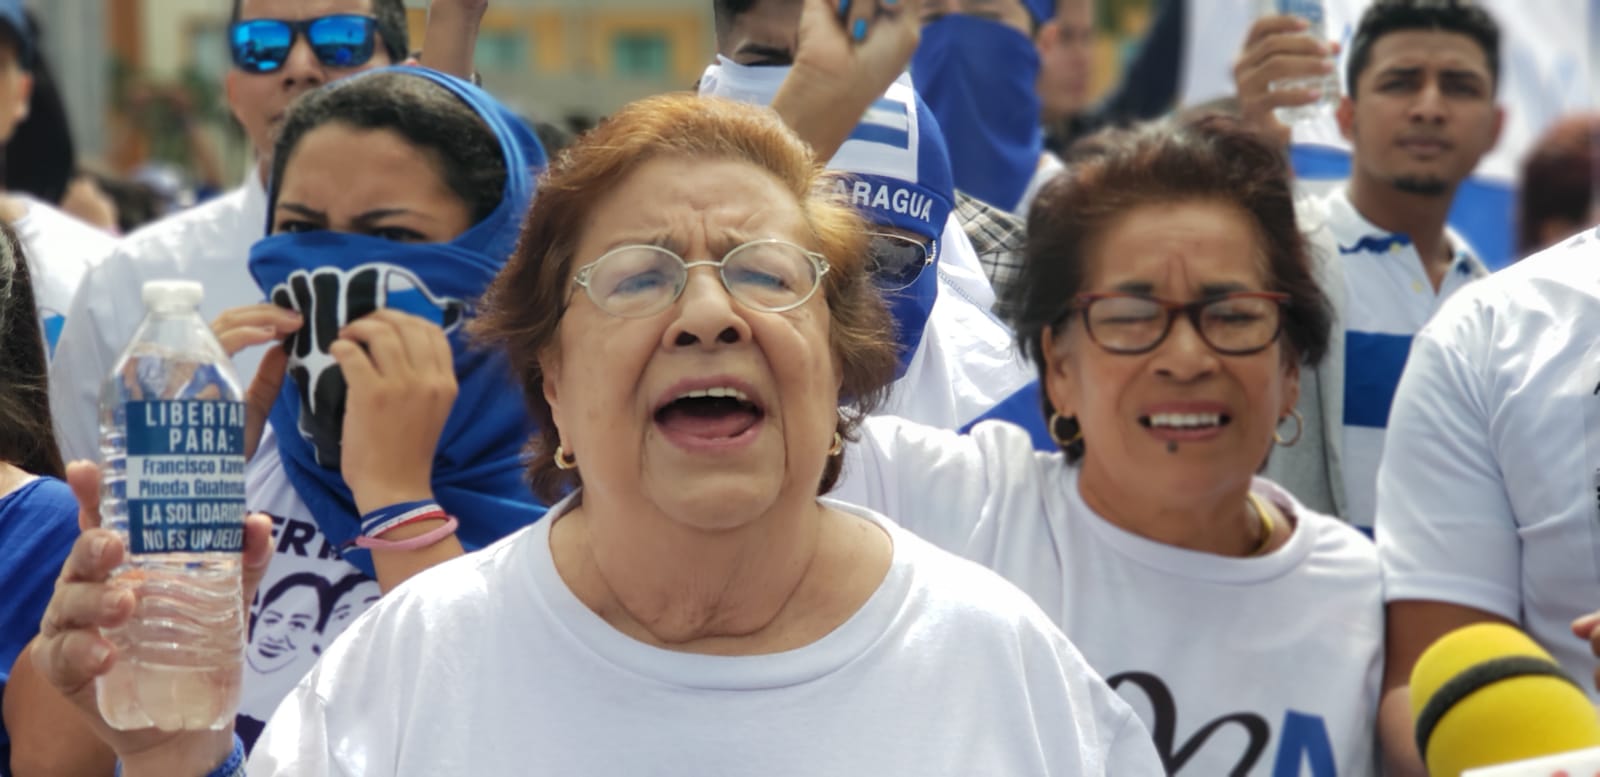 Defensores de derechos humanos protestan contra el régimen de Daniel Ortega. Foto: G. Shiffman / Artículo 66